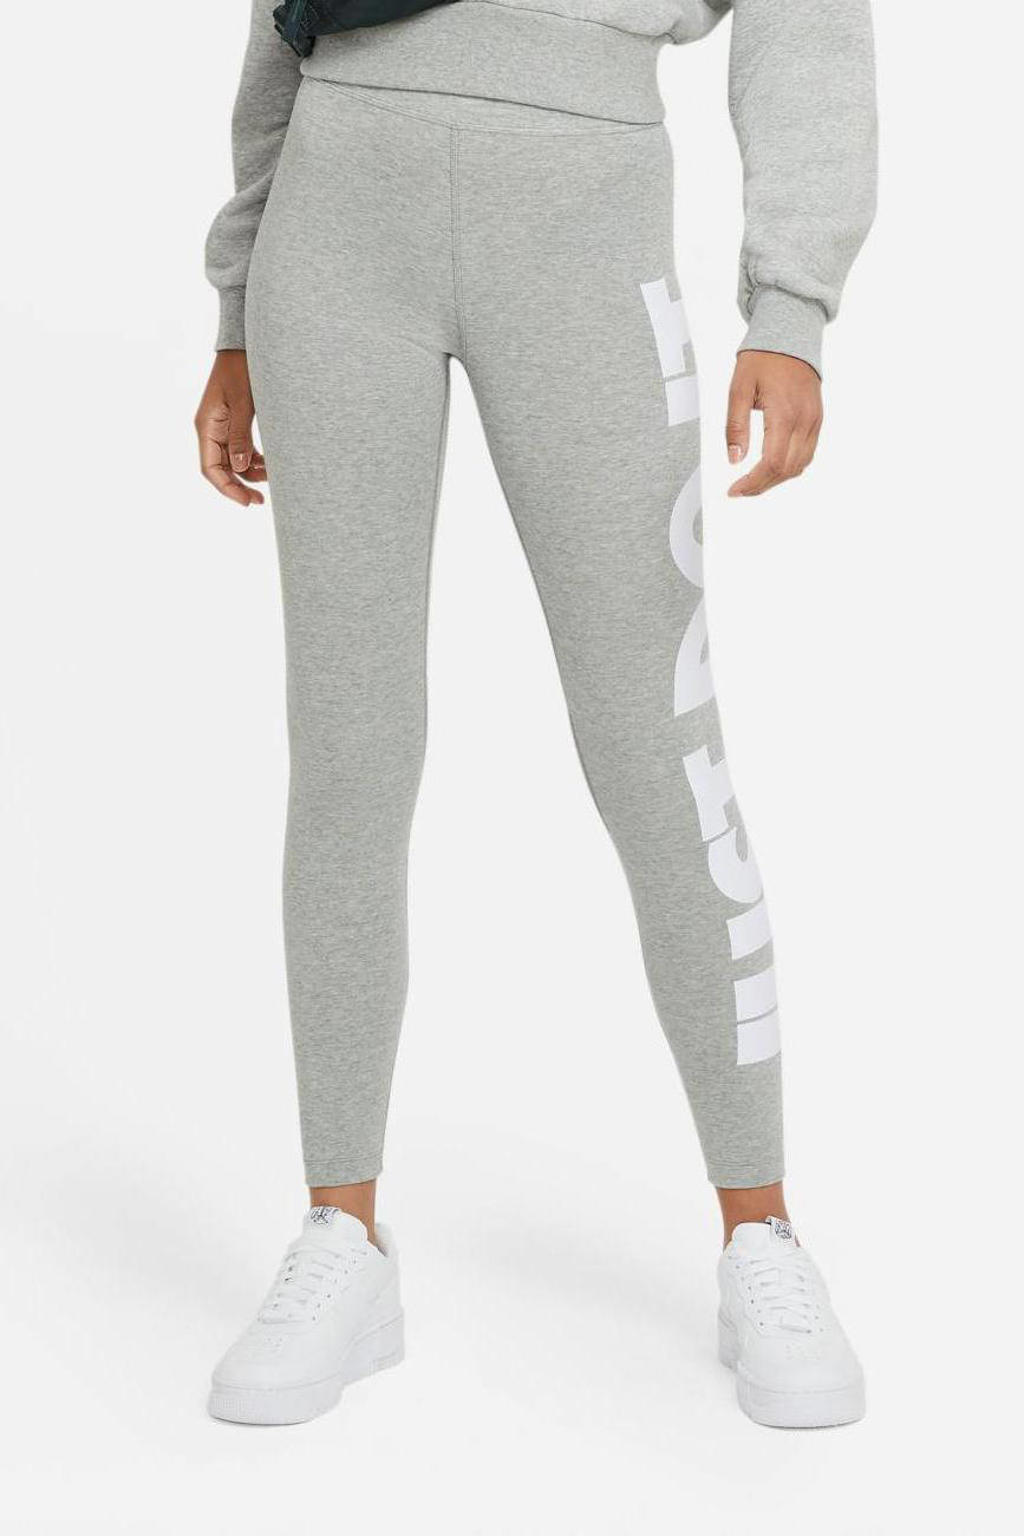 Grijs en witte dames Nike legging melange van katoen met slim fit, regular waist, elastische tailleband en logo dessin